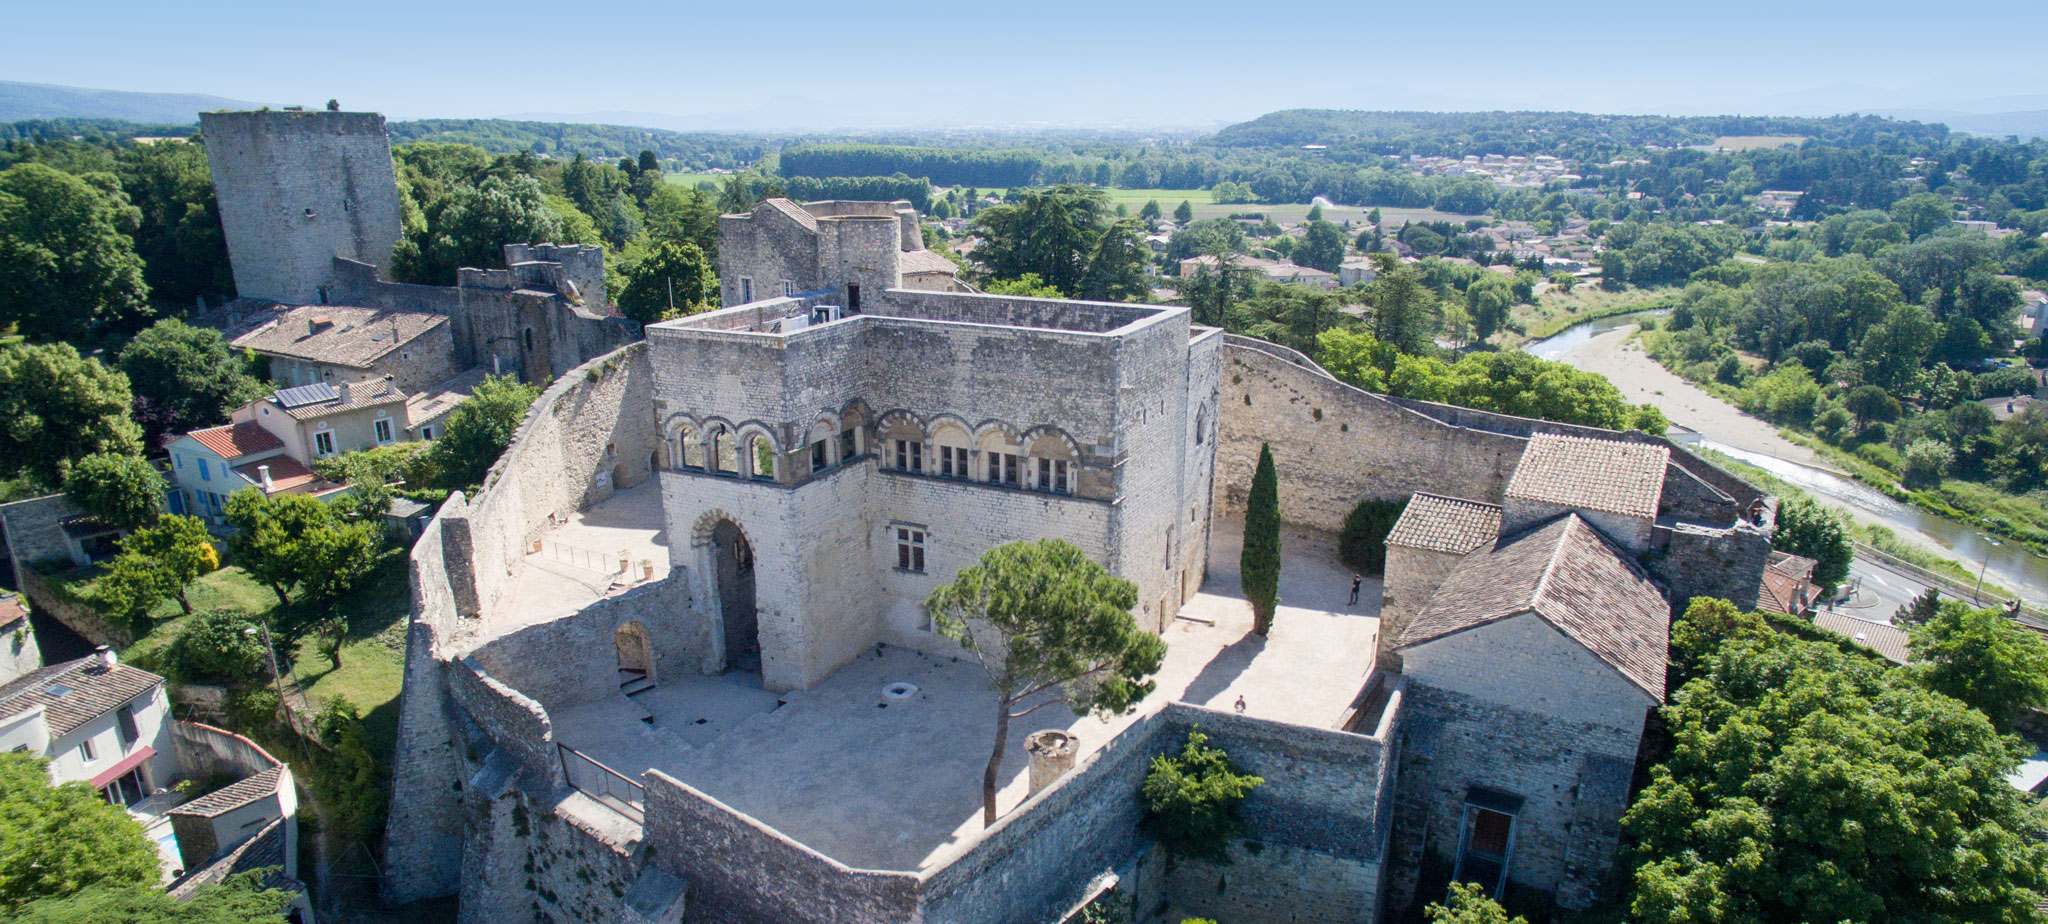 Chateau de Montelimar